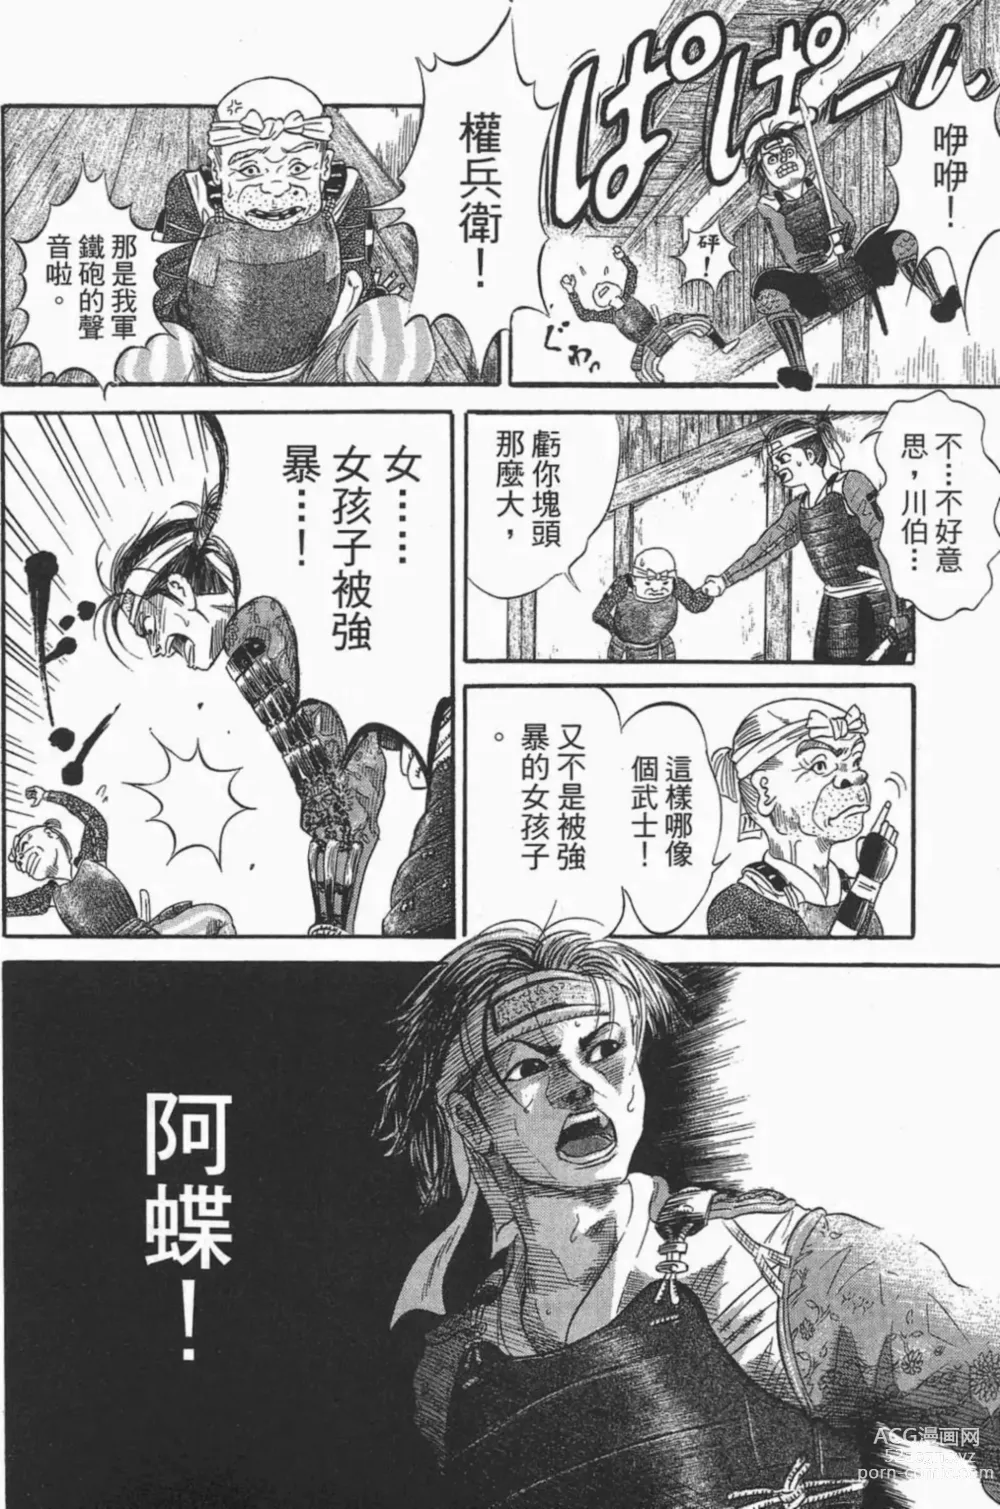 Page 8 of manga [宫下英树]战国第一卷［中文］